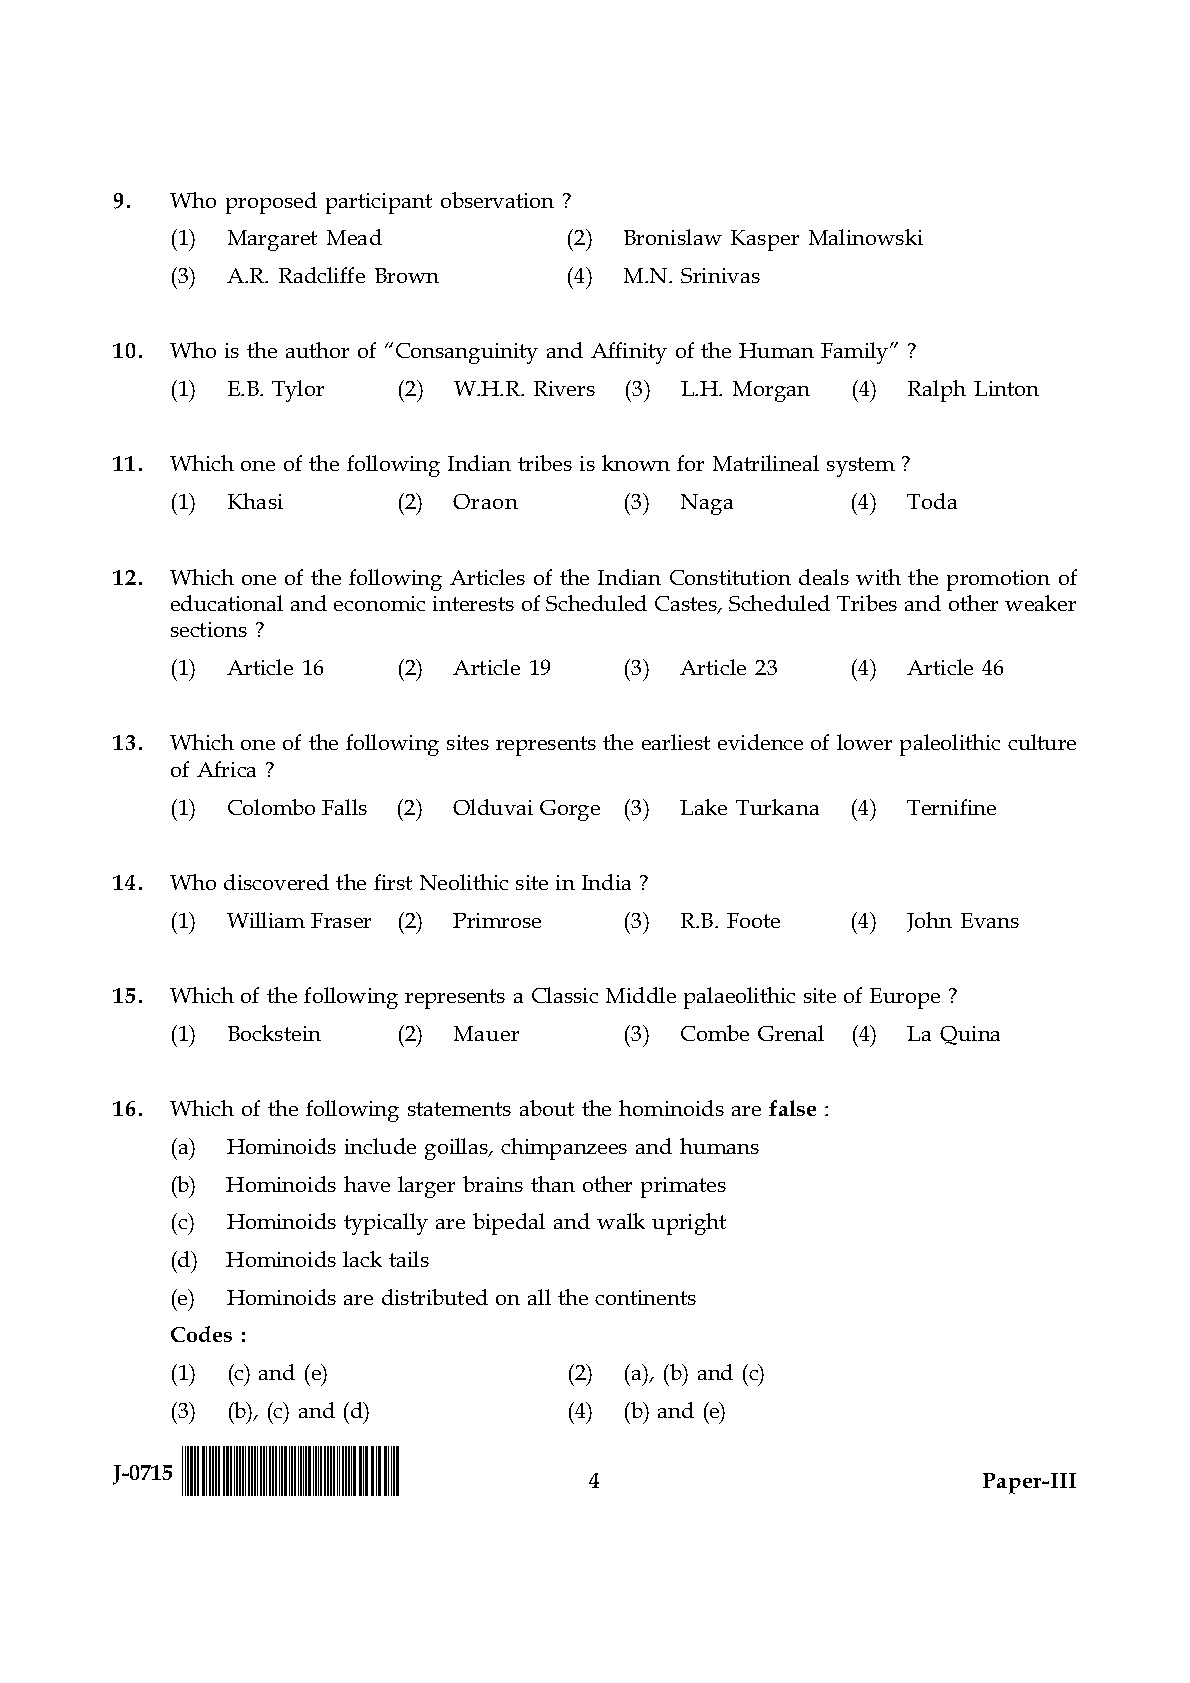 UGC NET Anthropology Question Paper III June 2015 4